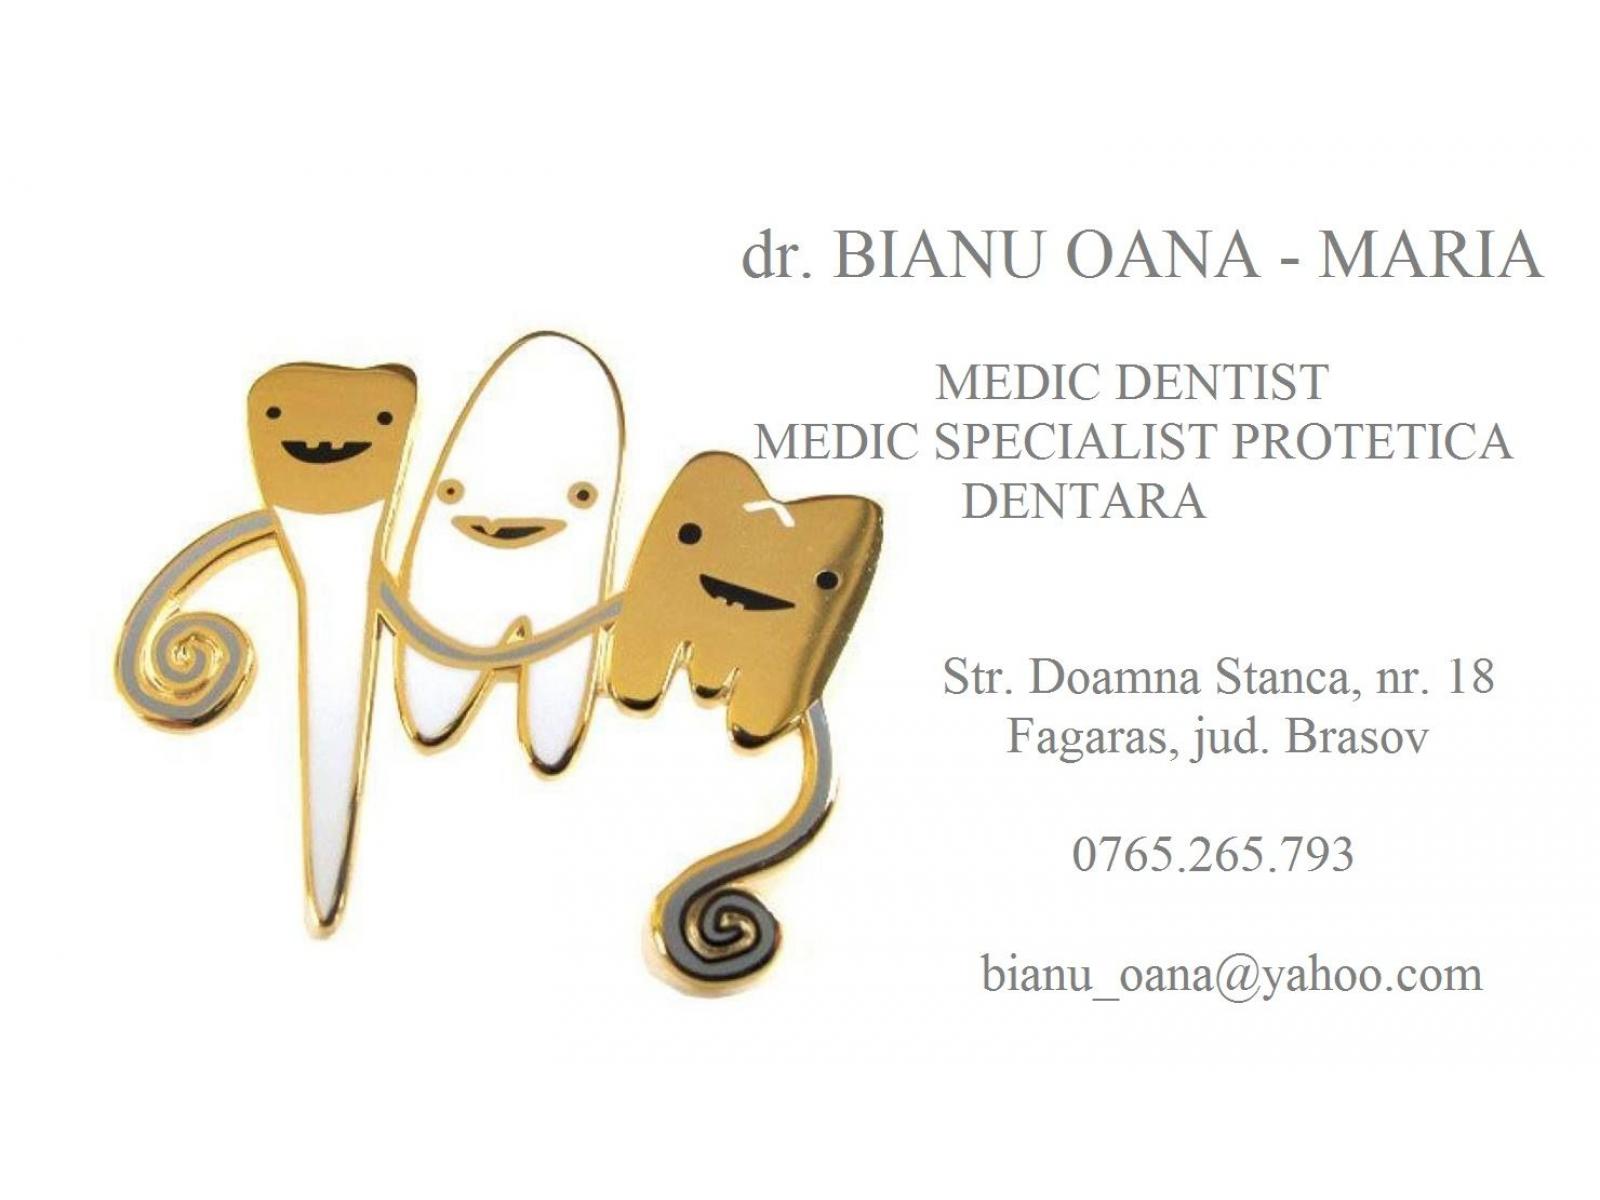 CABINET STOMATOLOGIC DR. BIANU OANA-MARIA - 995406_599009313472727_473592284_n.jpg